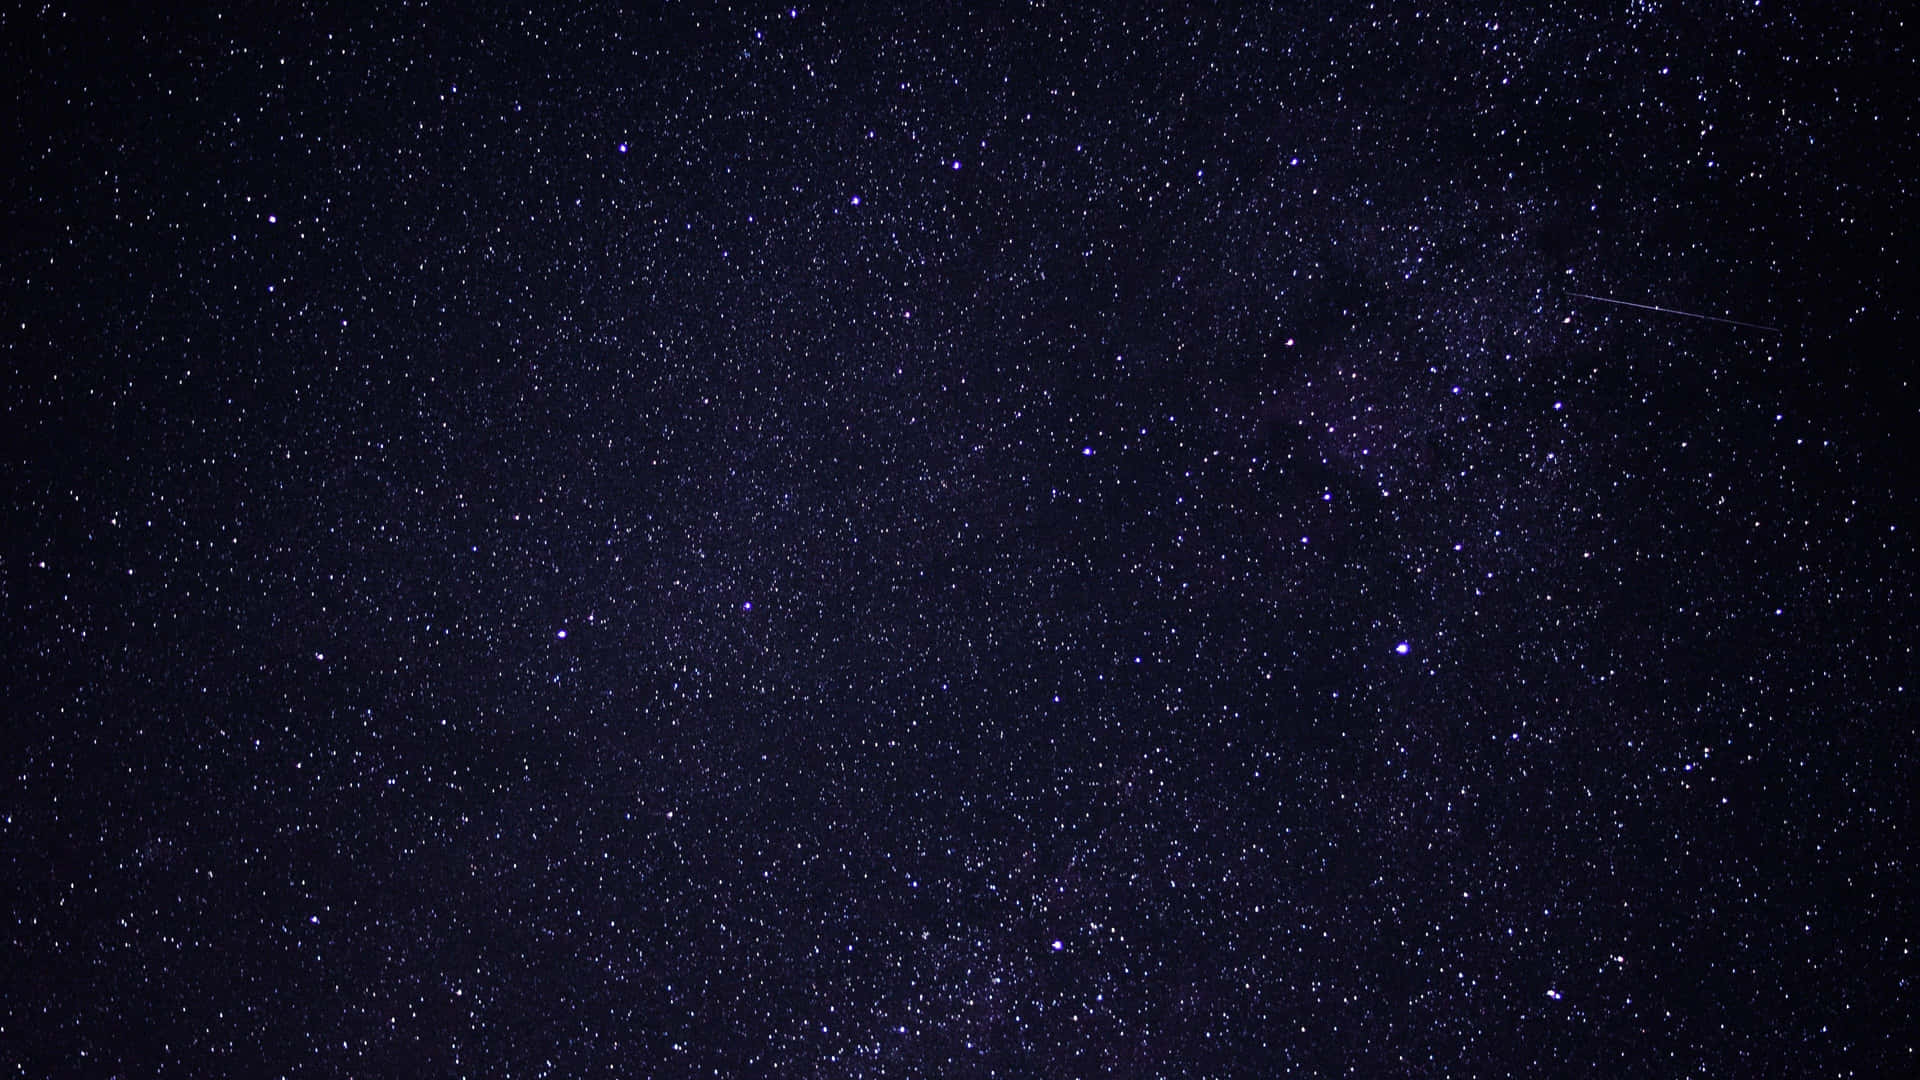 En natudsigt af en stjerneklar himmel, fyldt med glimtende stjerner. Wallpaper